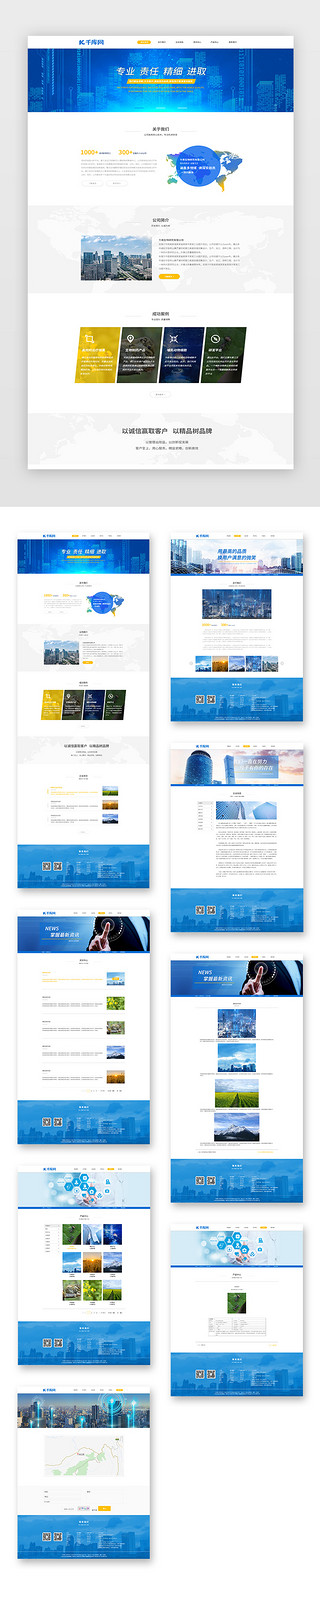 研究贡献UI设计素材_蓝色通用简约生物药物研究企业网站套图